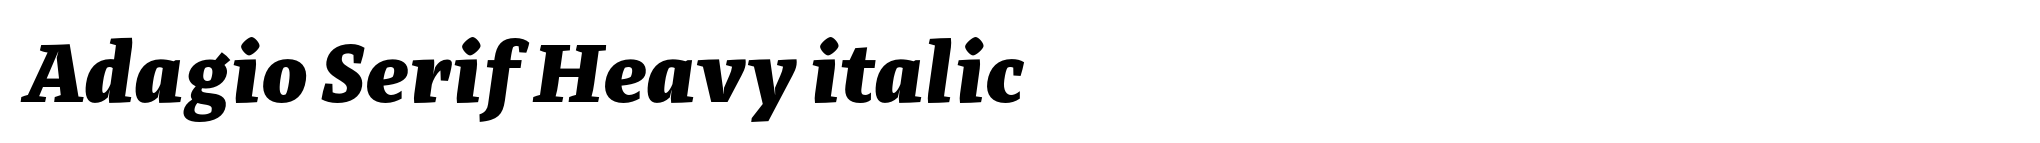 Adagio Serif Heavy italic image